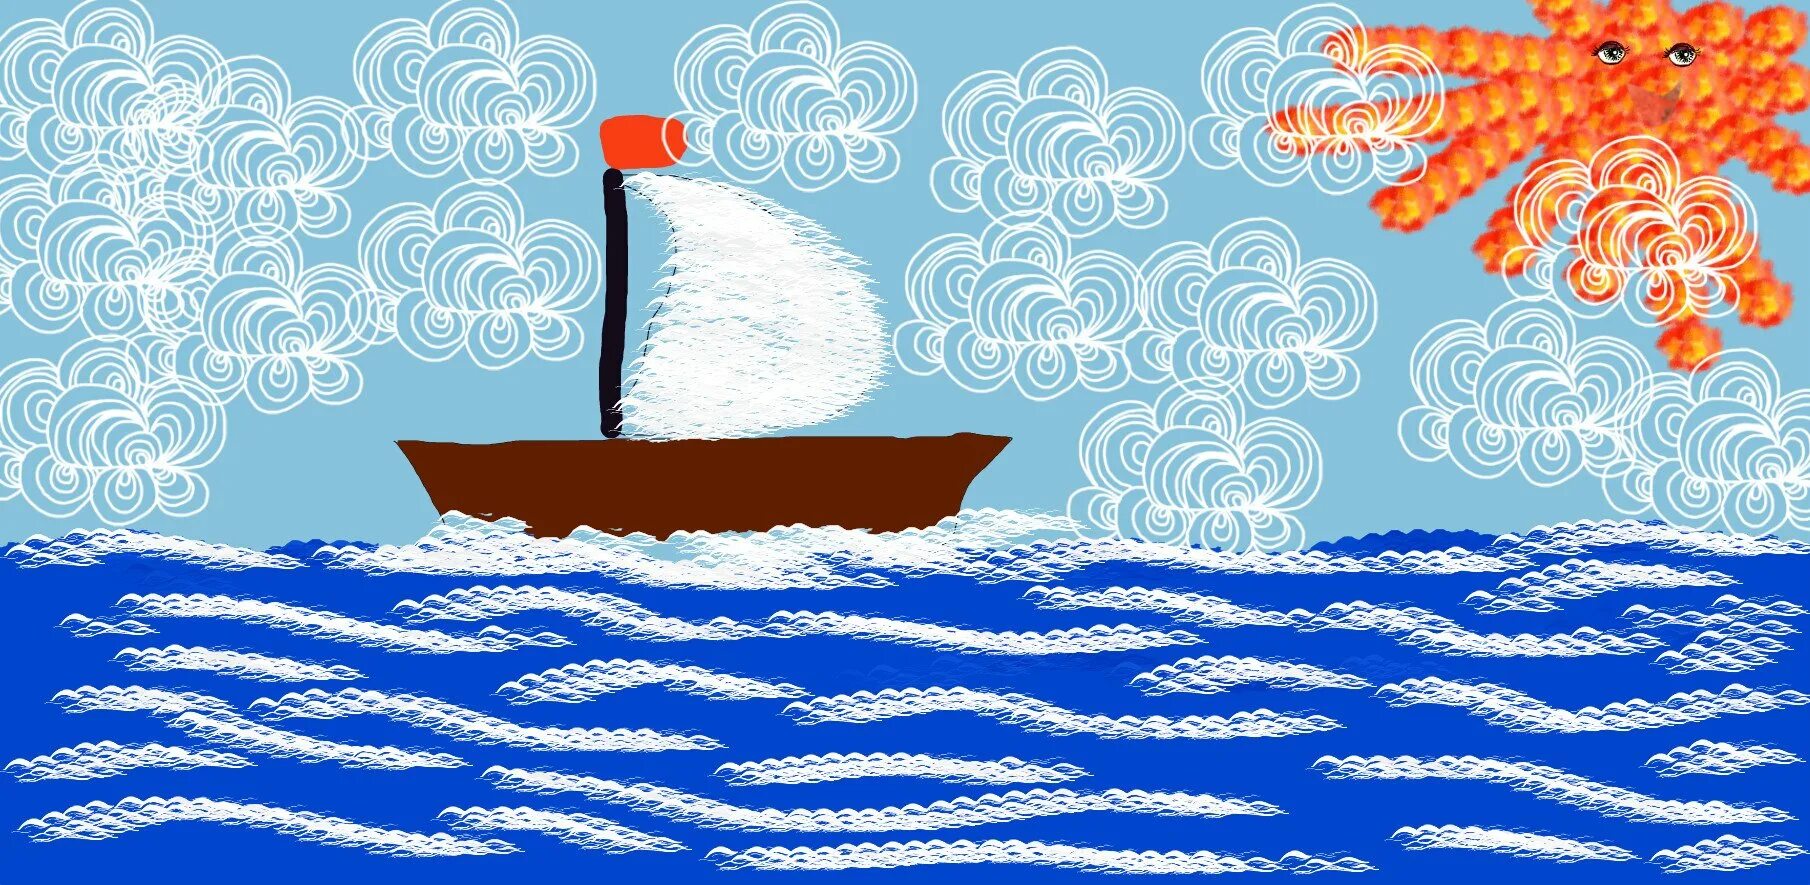 Гуляет ветер по волнам. Волны рисунок. Аппликация волны. Волны для детей. Рисунок на тему море.